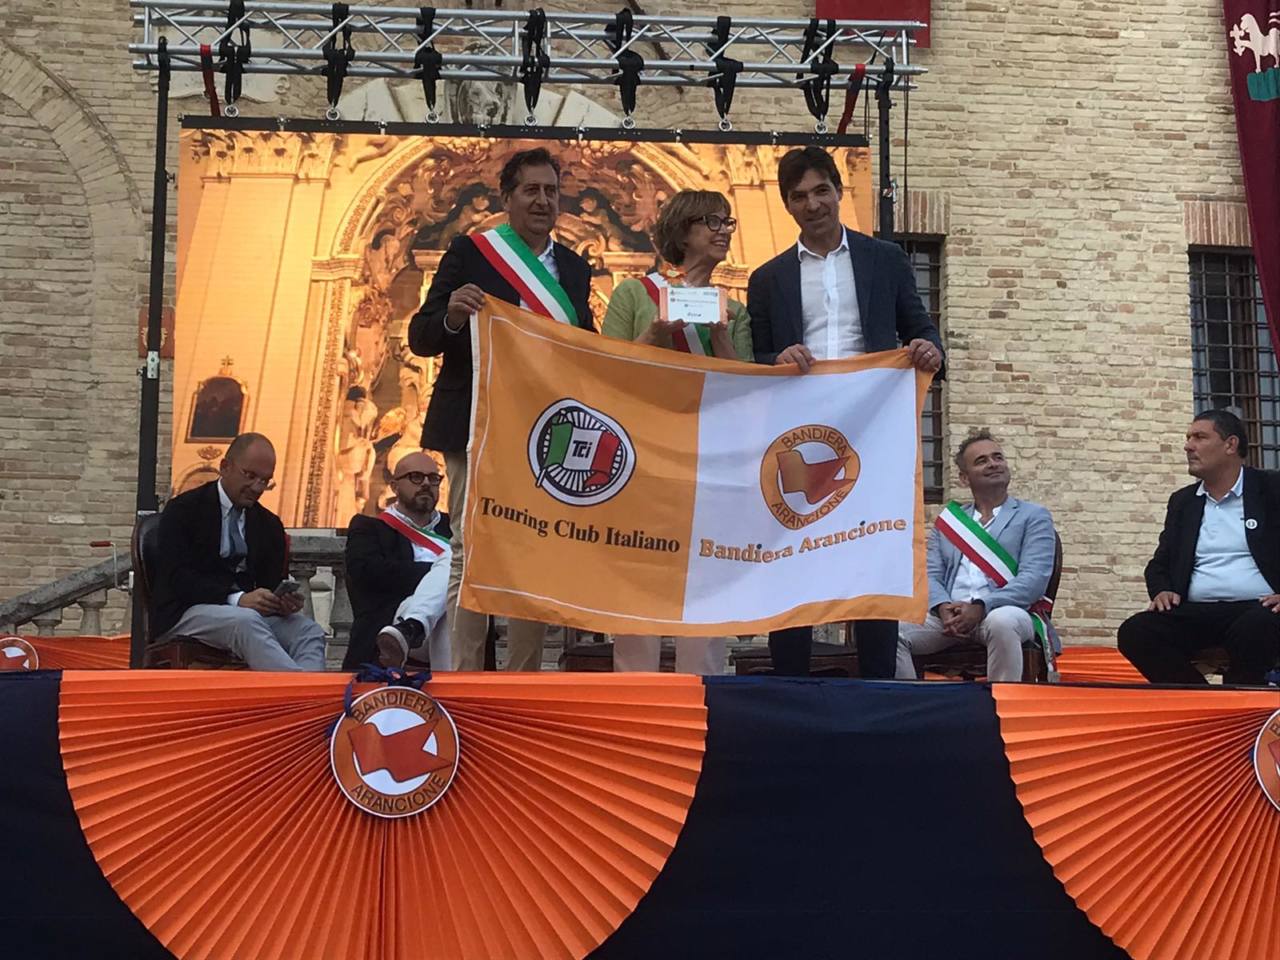 La sindaca di Ostra Federica Fanesi riceve la bandiera arancione 2022 del Touring Club Italiano